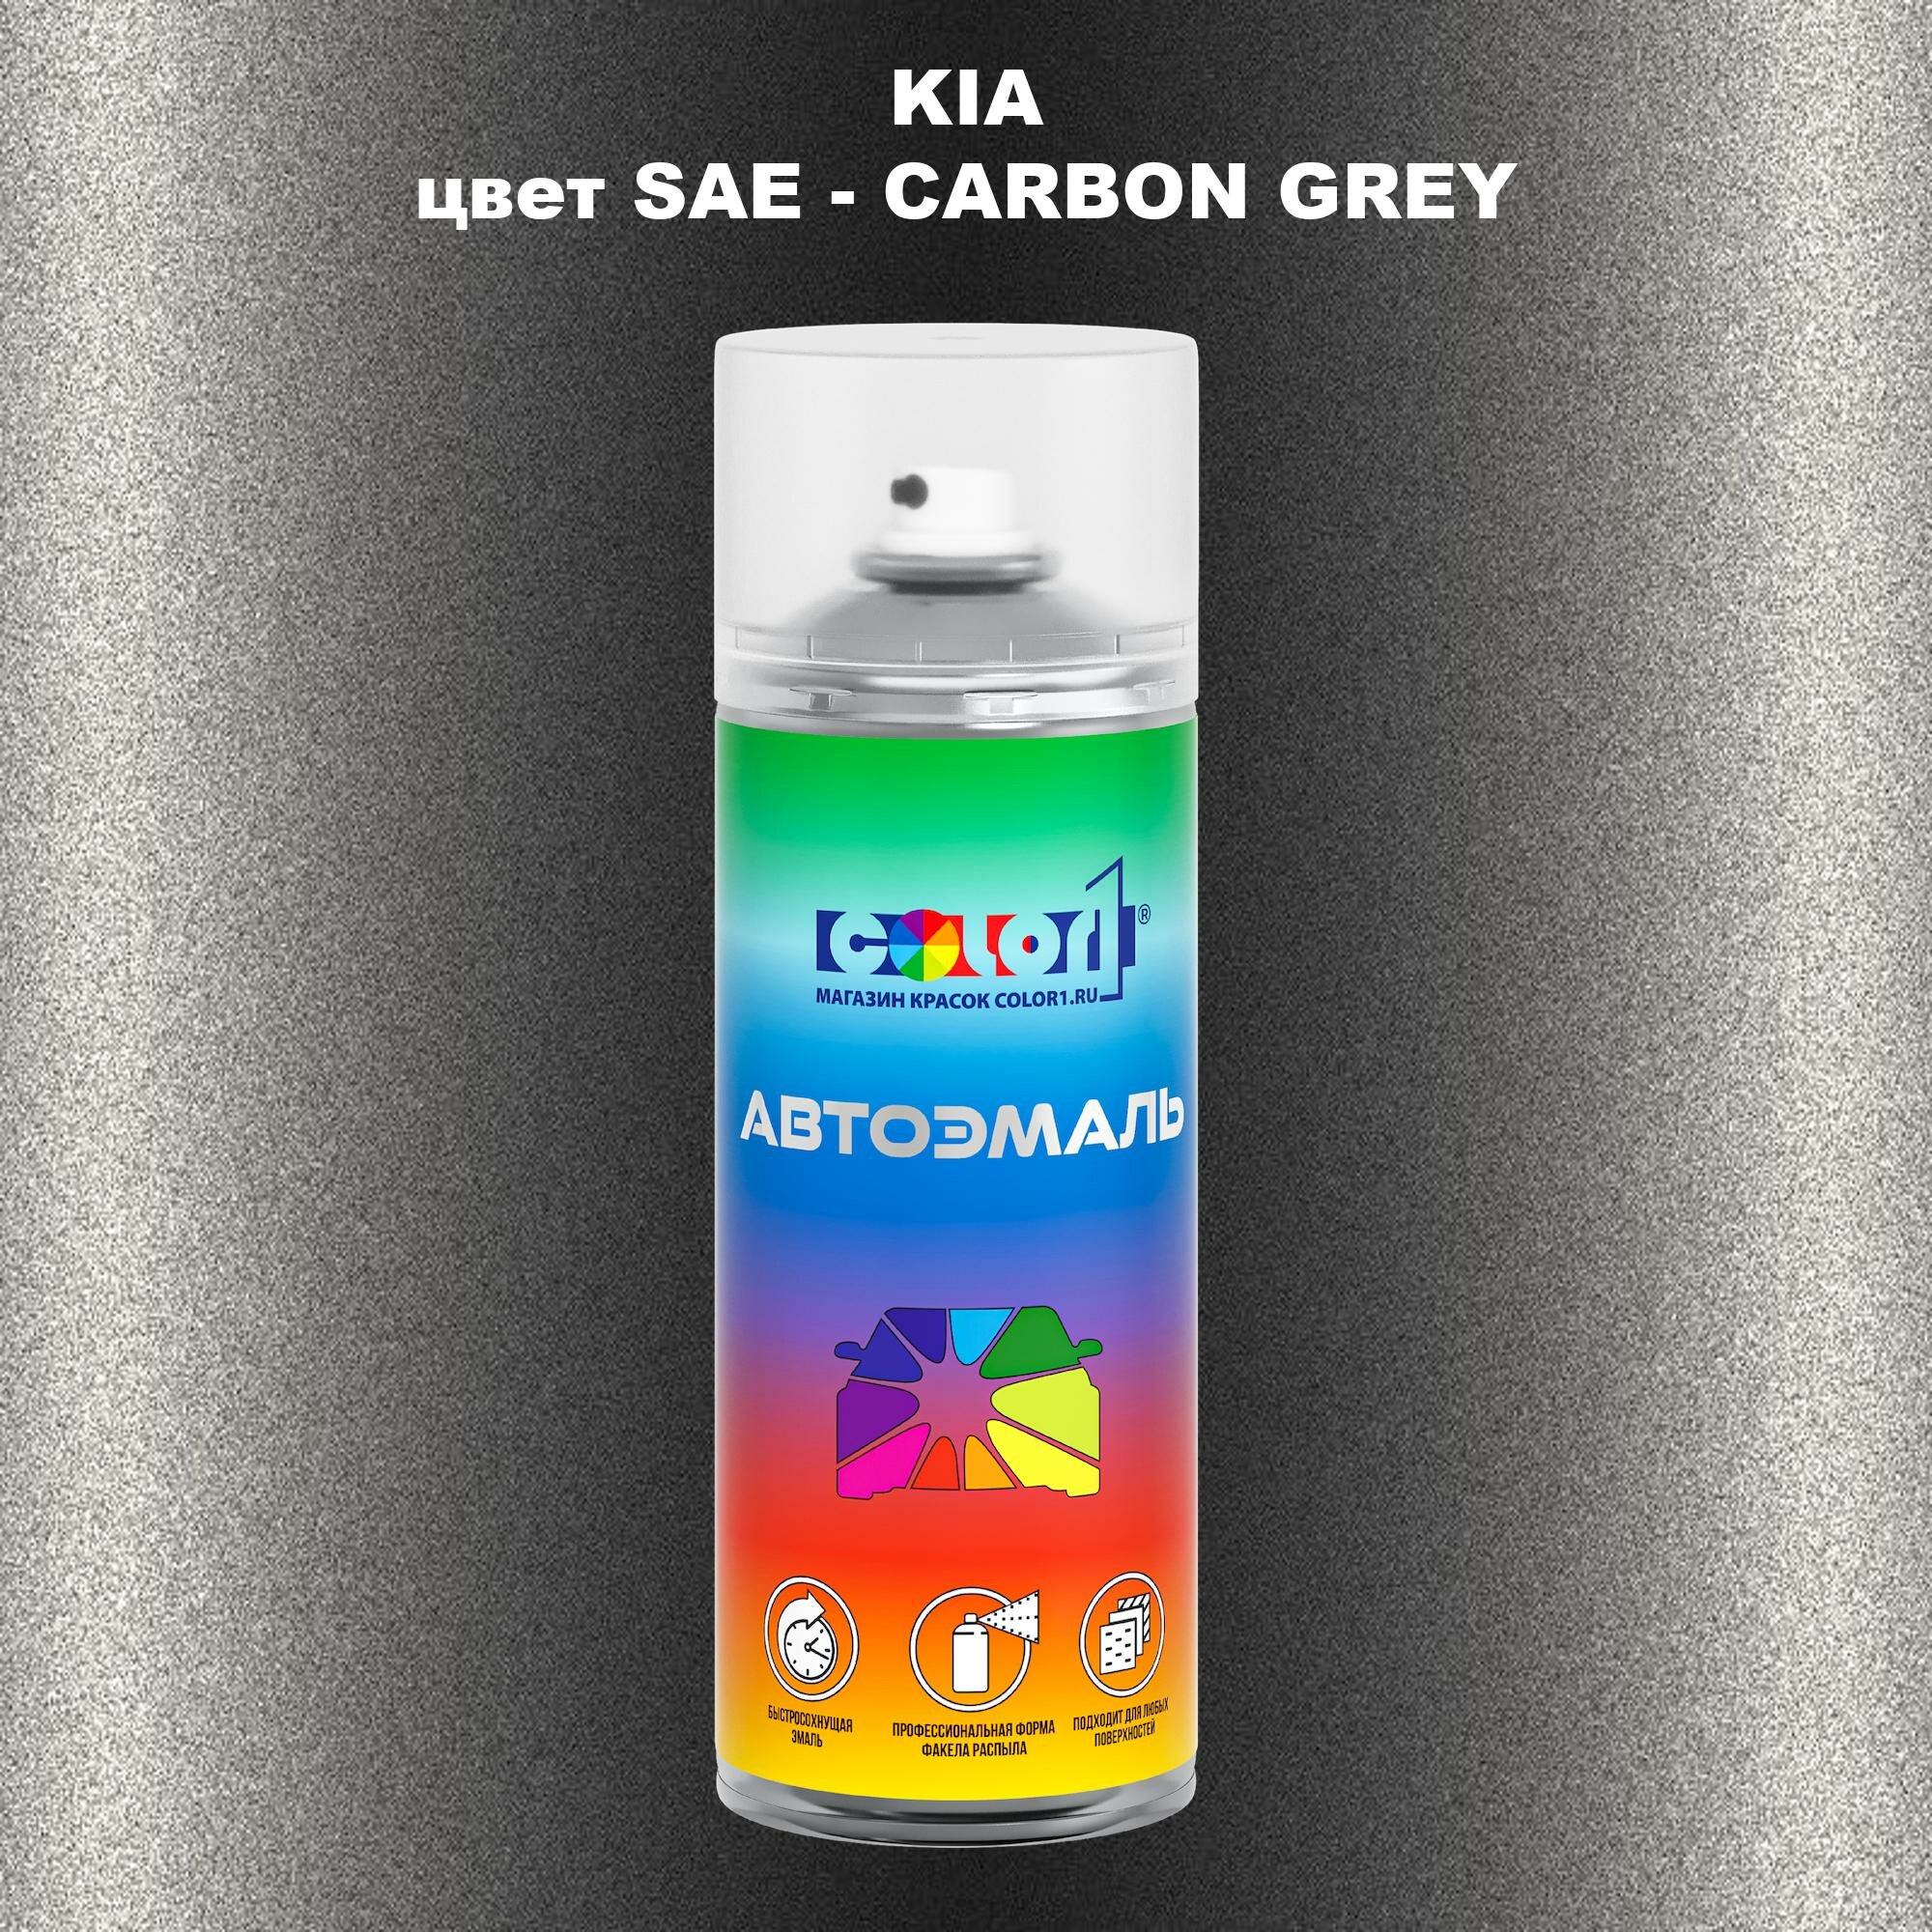 Аэрозольная краска COLOR1 для KIA, цвет SAE - CARBON GREY